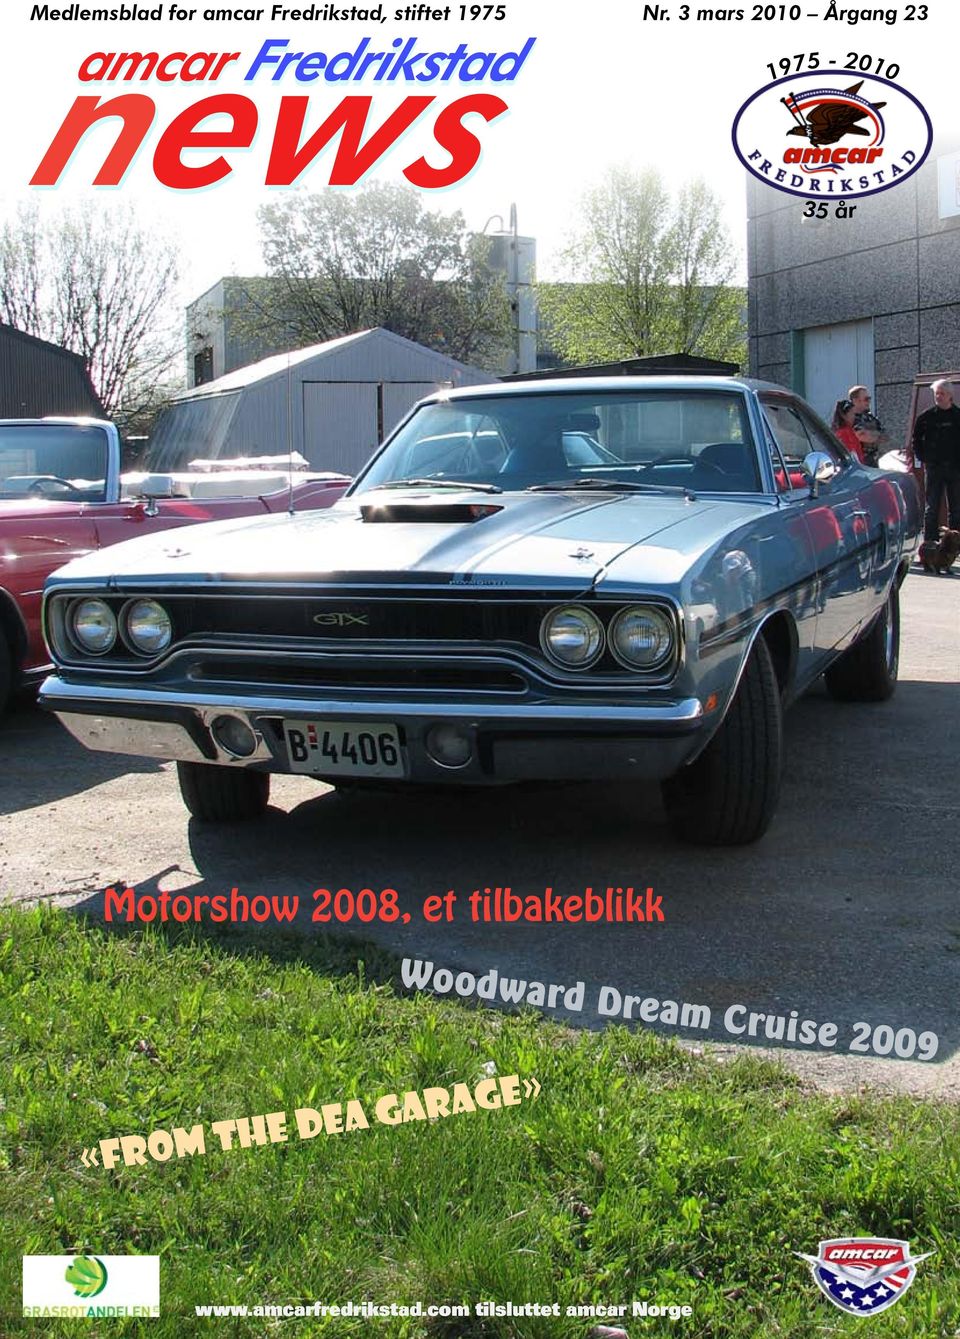 Motorshow 2008, et tilbakeblikk «From the DEA Garage»